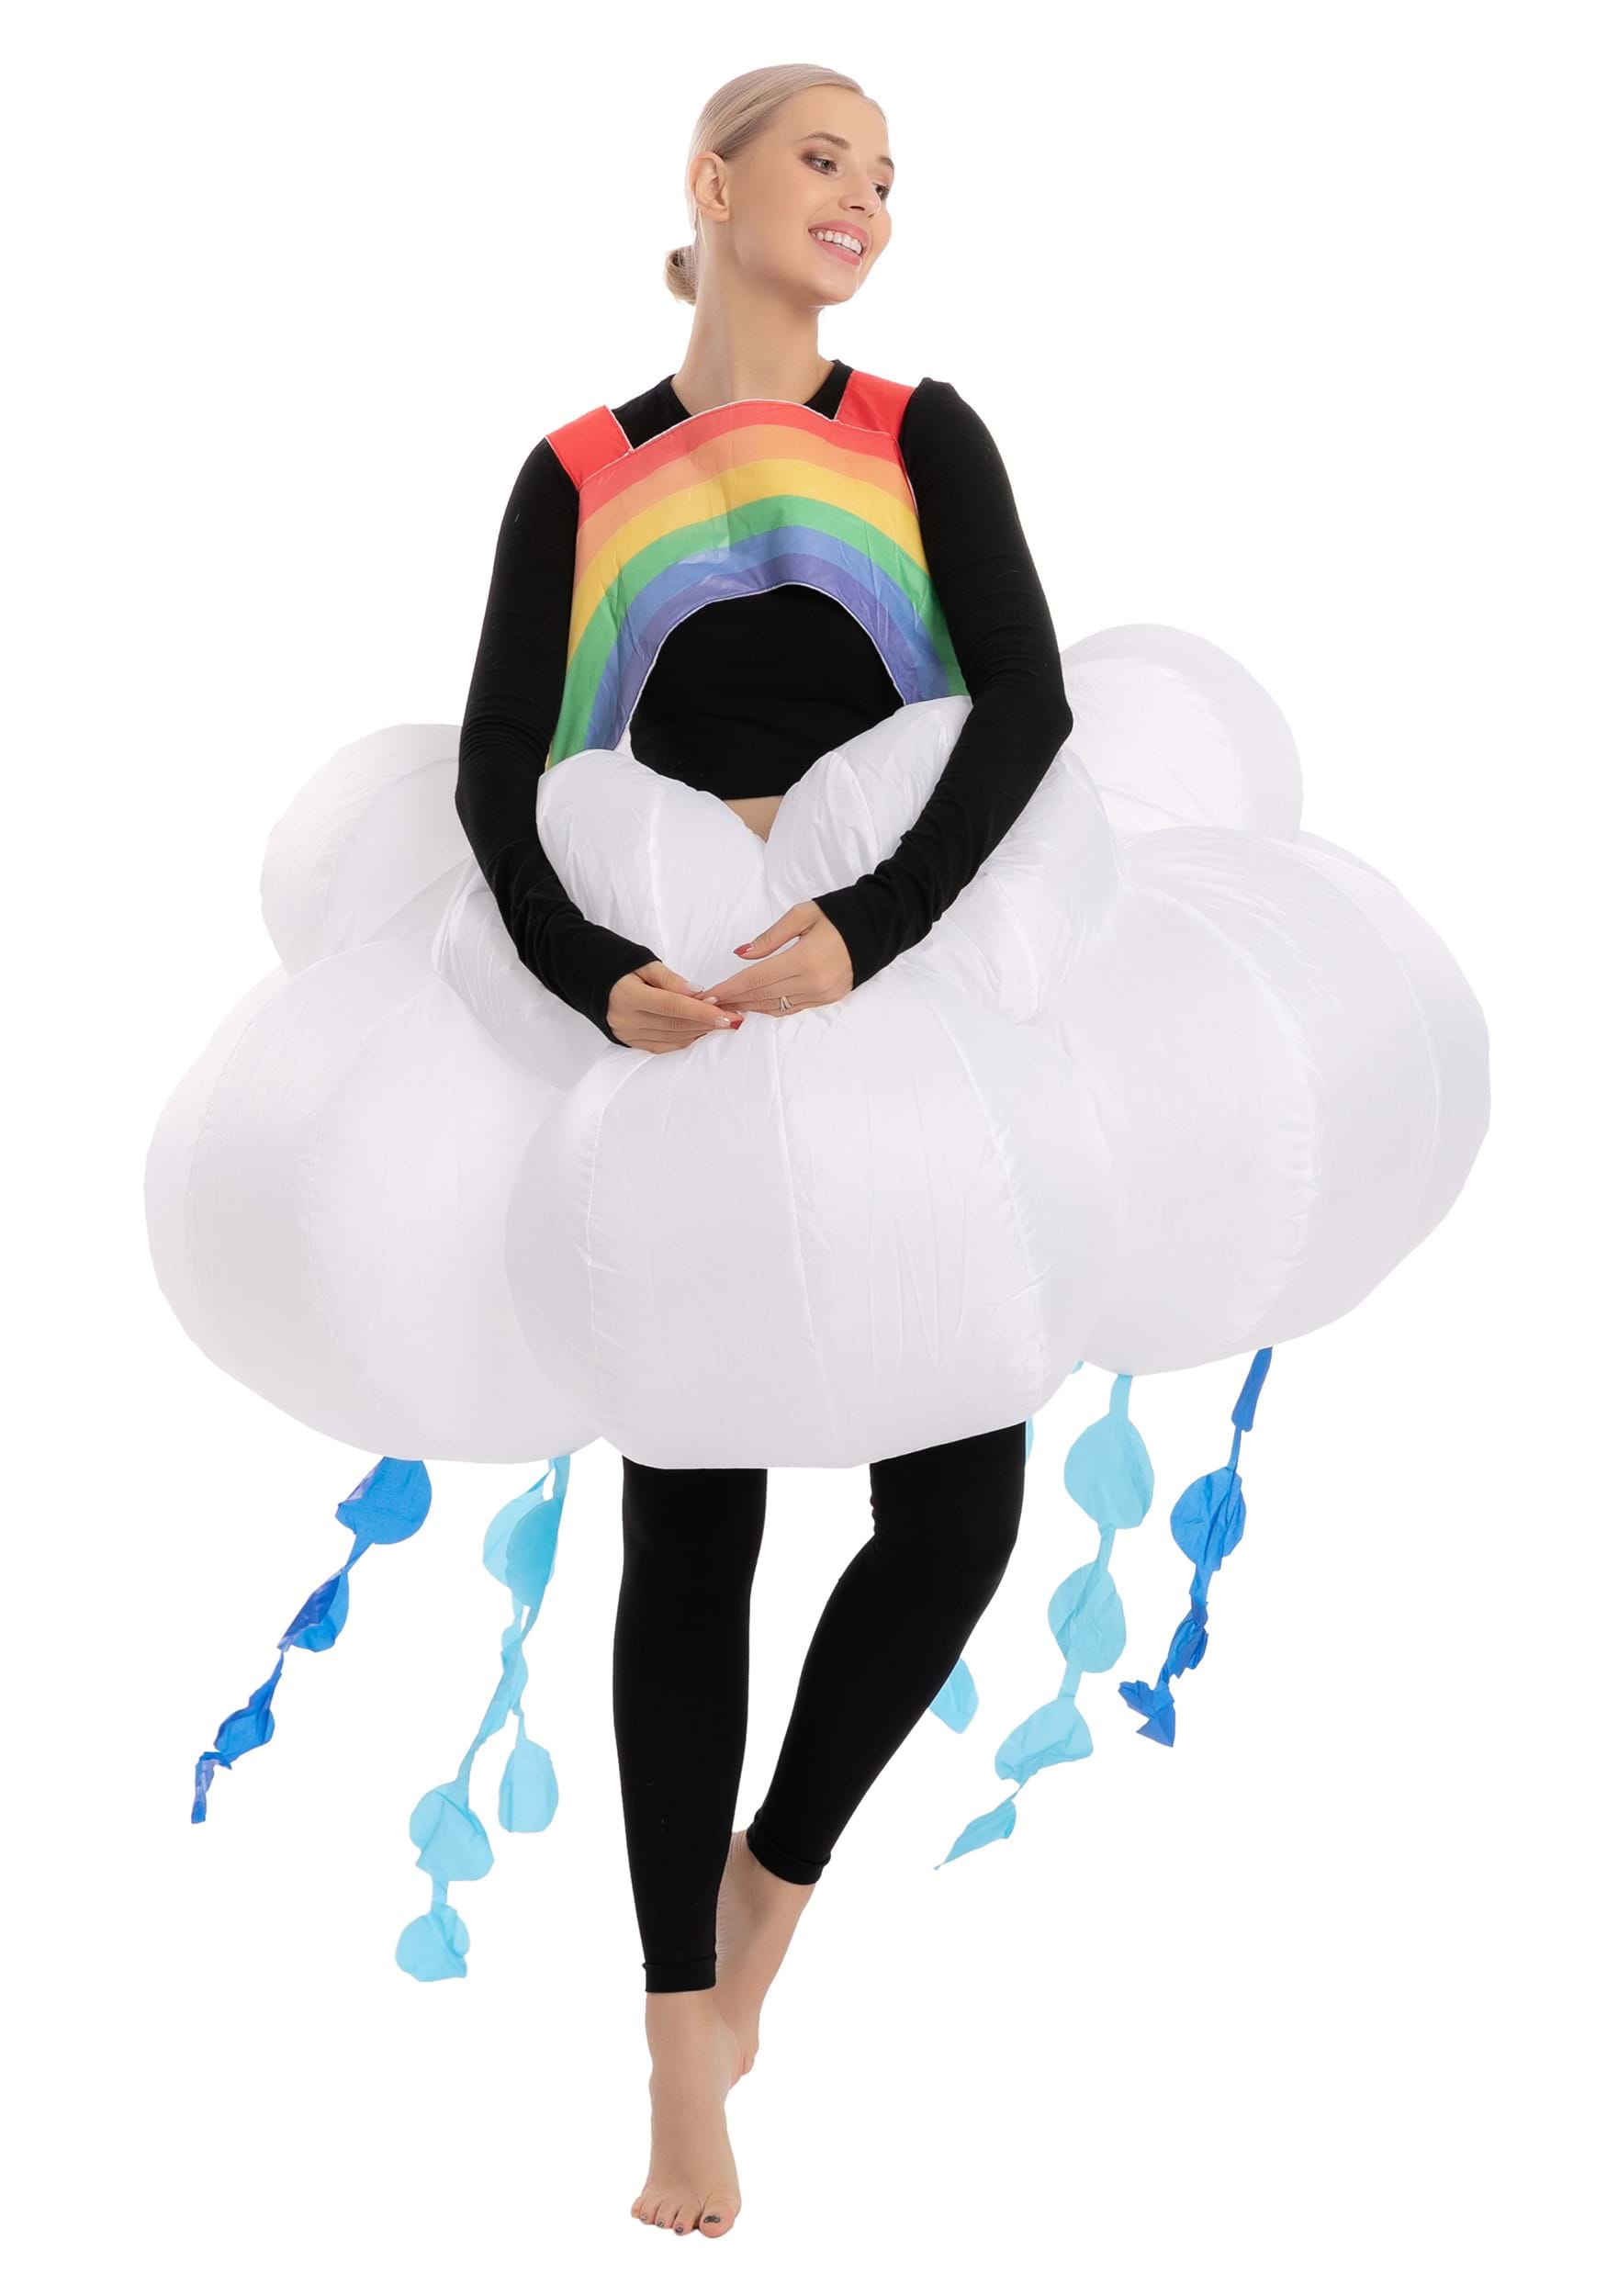 Disfraz de nube de lluvia inflable para adultos para adultos Multicolor Colombia